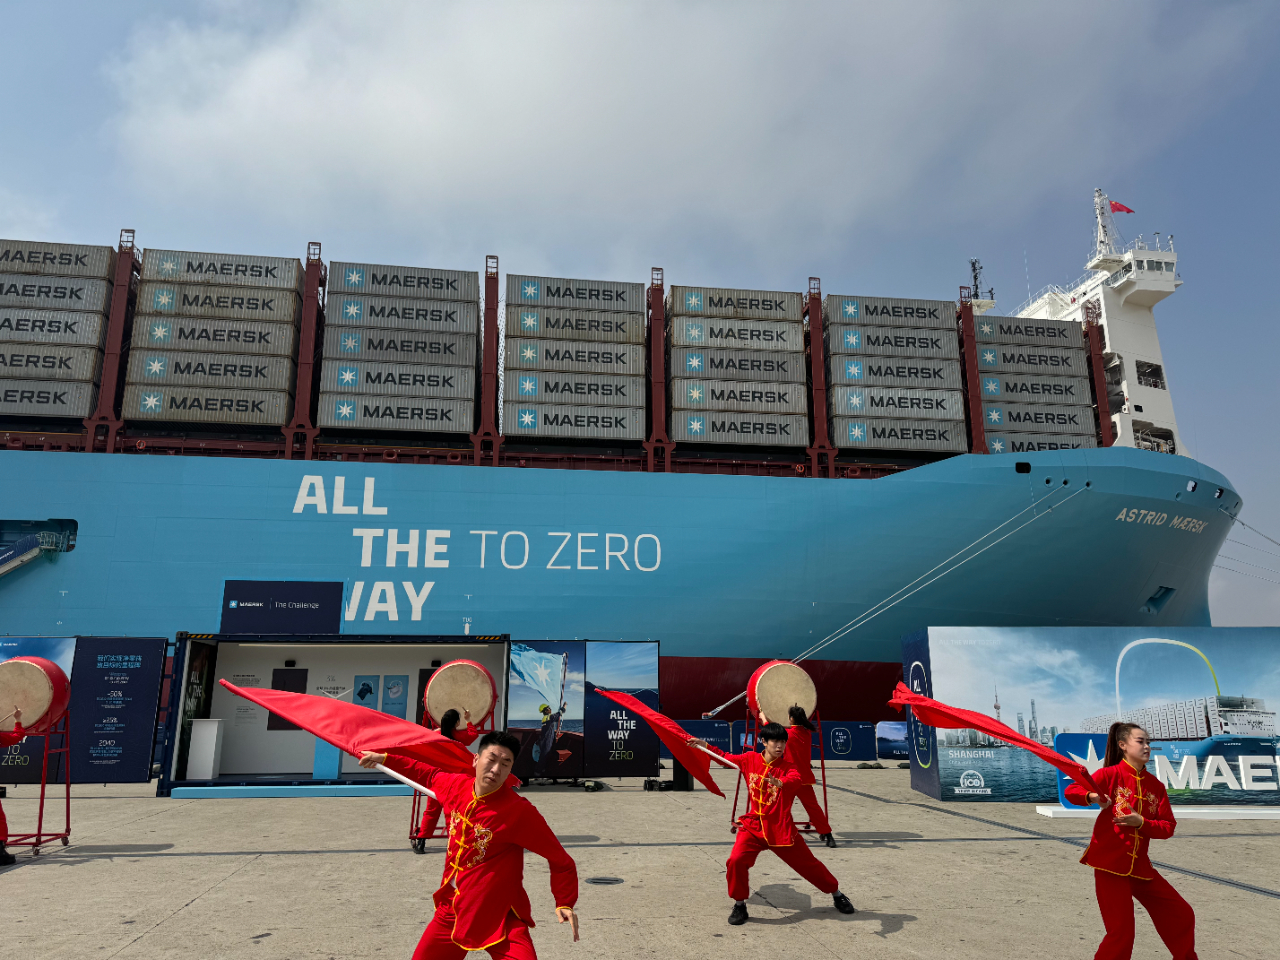  马士基服务中国对外贸易一百周年庆典暨中国首次大型绿色甲醇动力船舶同步加注仪式在洋山港举办,